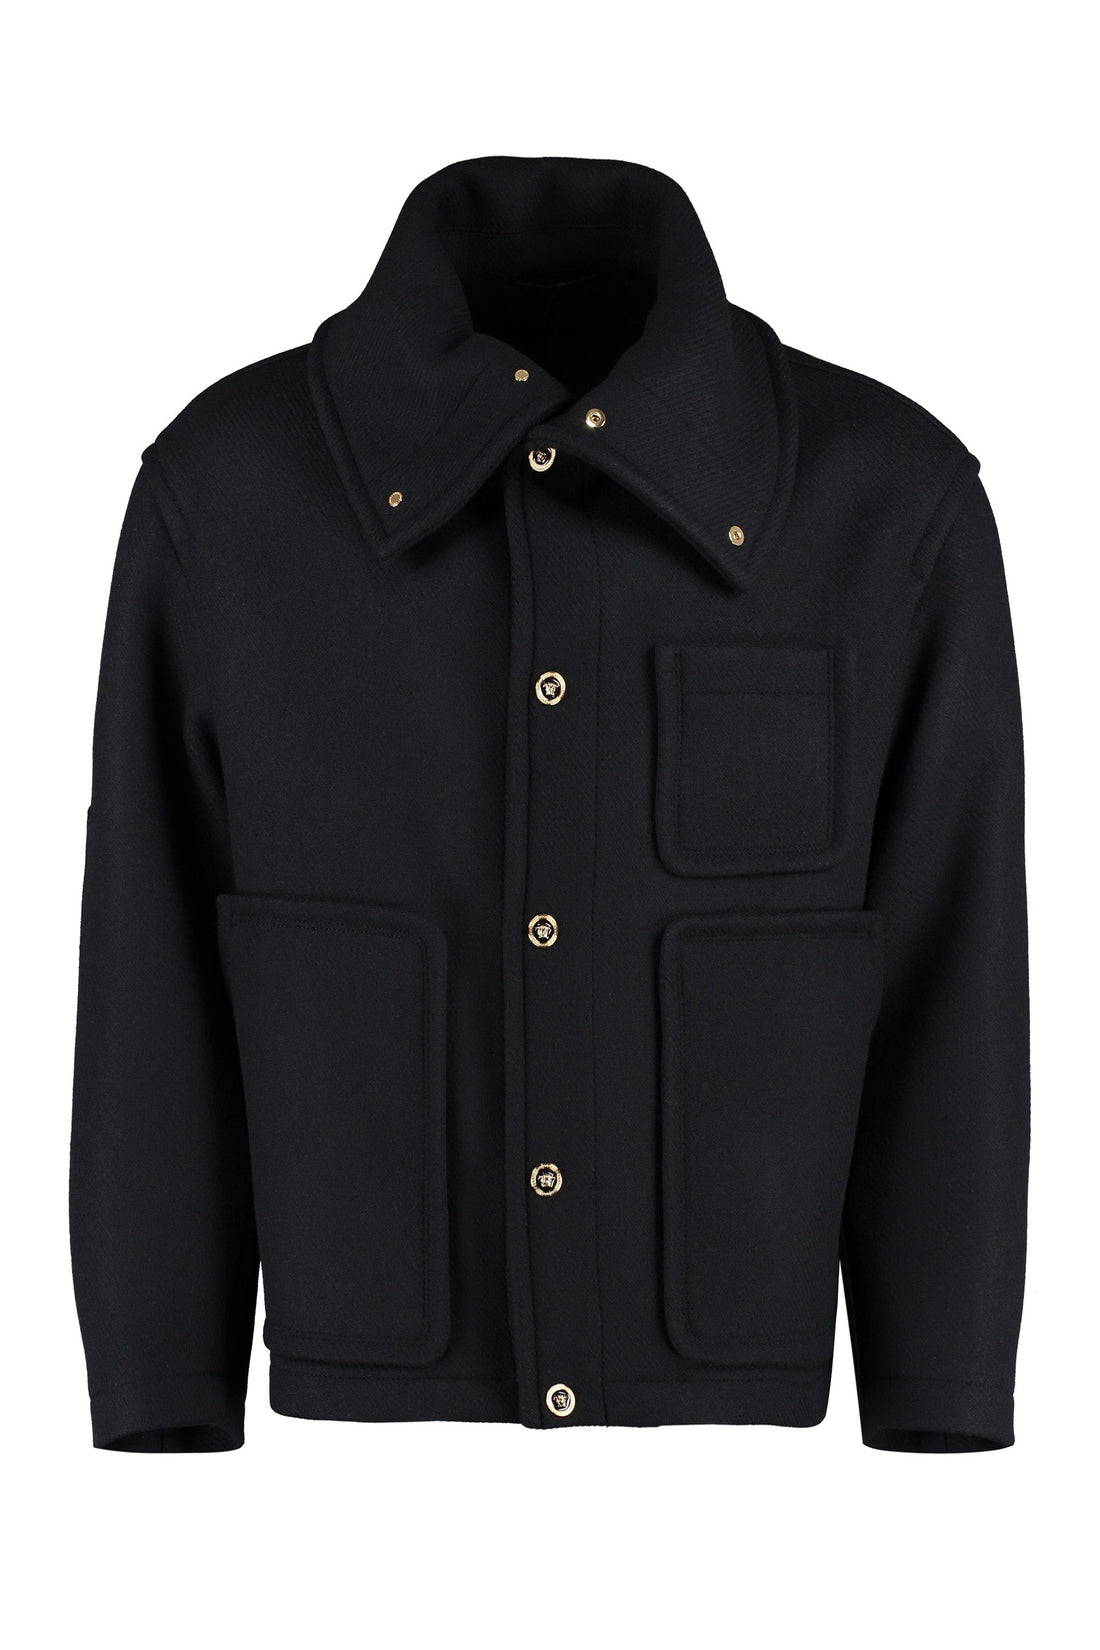 Versace-OUTLET-SALE-Wool blend jacket-ARCHIVIST